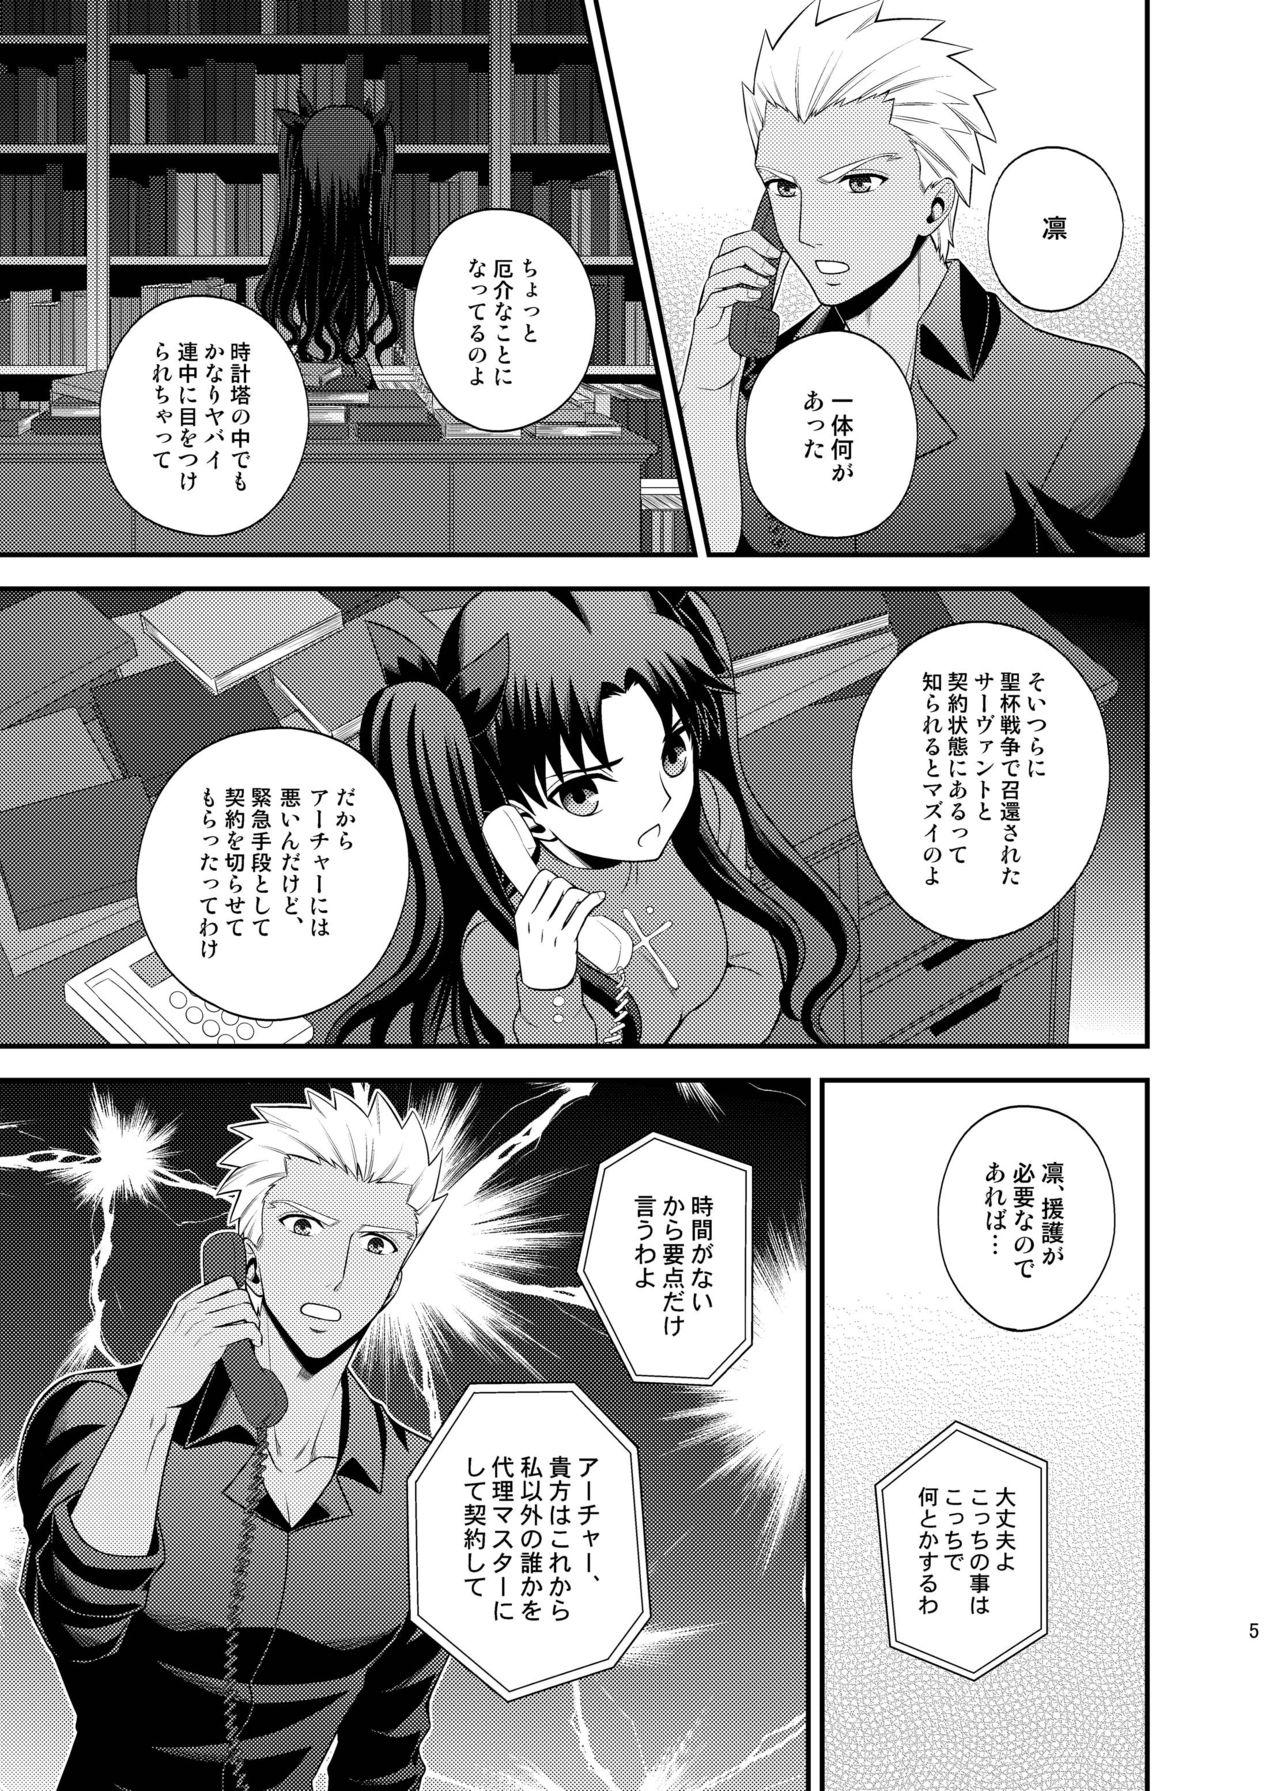 Car Saigo no Yoru ni - Fate stay night Travesti - Page 6